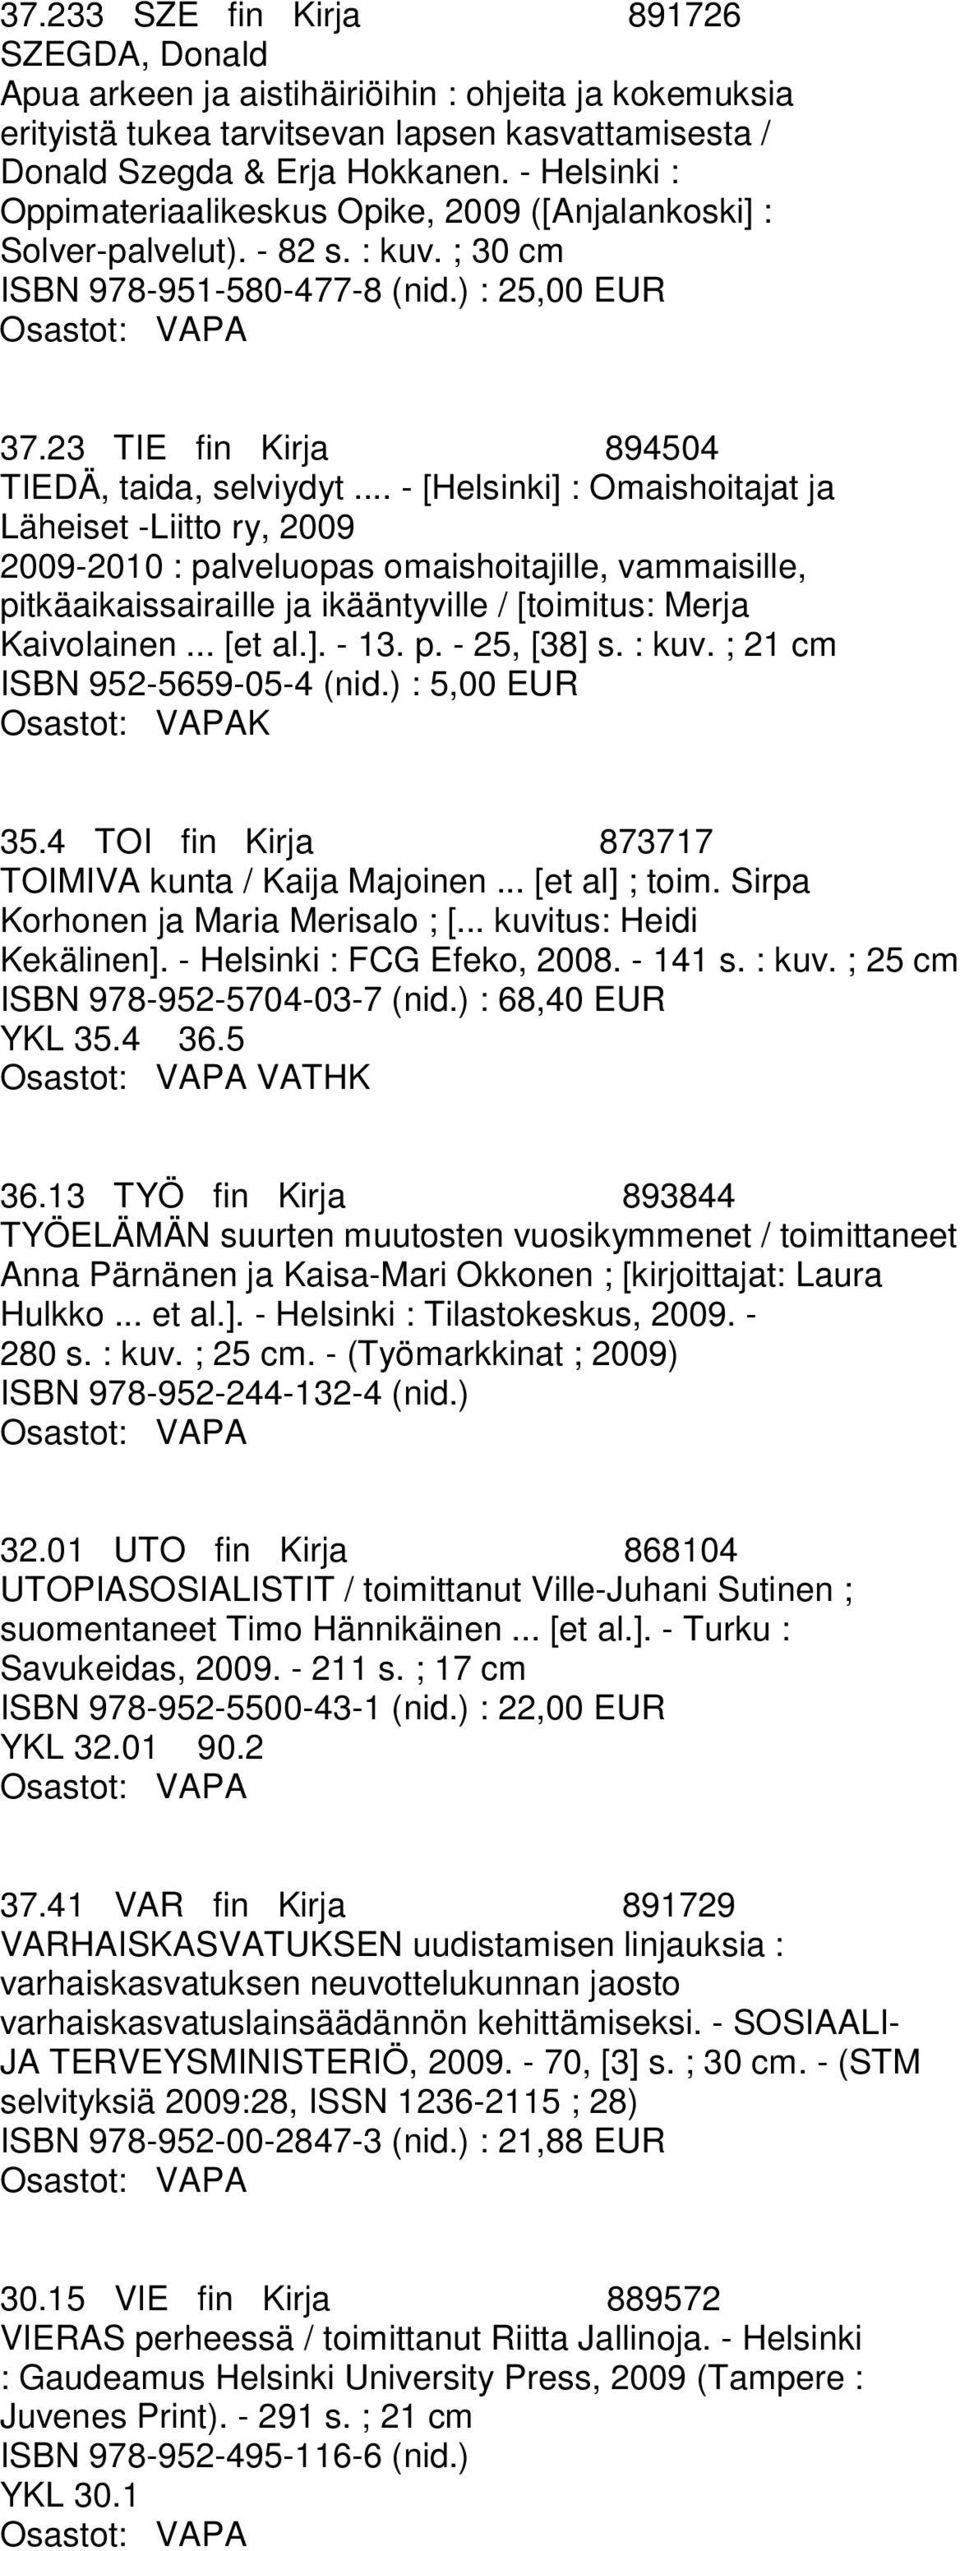 .. - [Helsinki] : Omaishoitajat ja Läheiset -Liitto ry, 2009 2009-2010 : palveluopas omaishoitajille, vammaisille, pitkäaikaissairaille ja ikääntyville / [toimitus: Merja Kaivolainen... [et al.]. - 13.